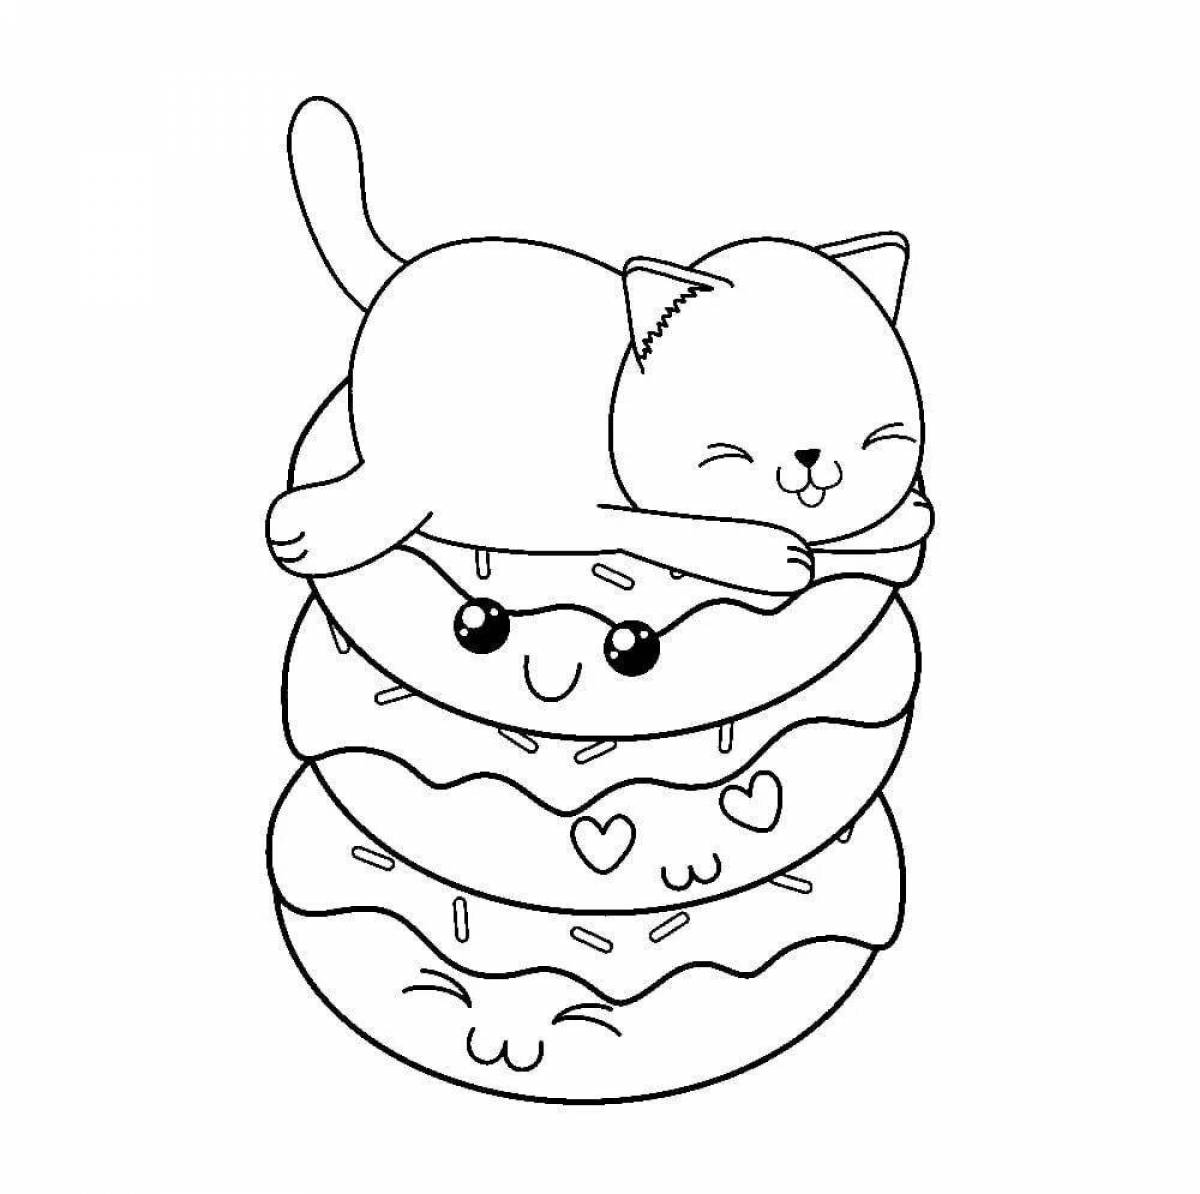 Coloring cute burger cat